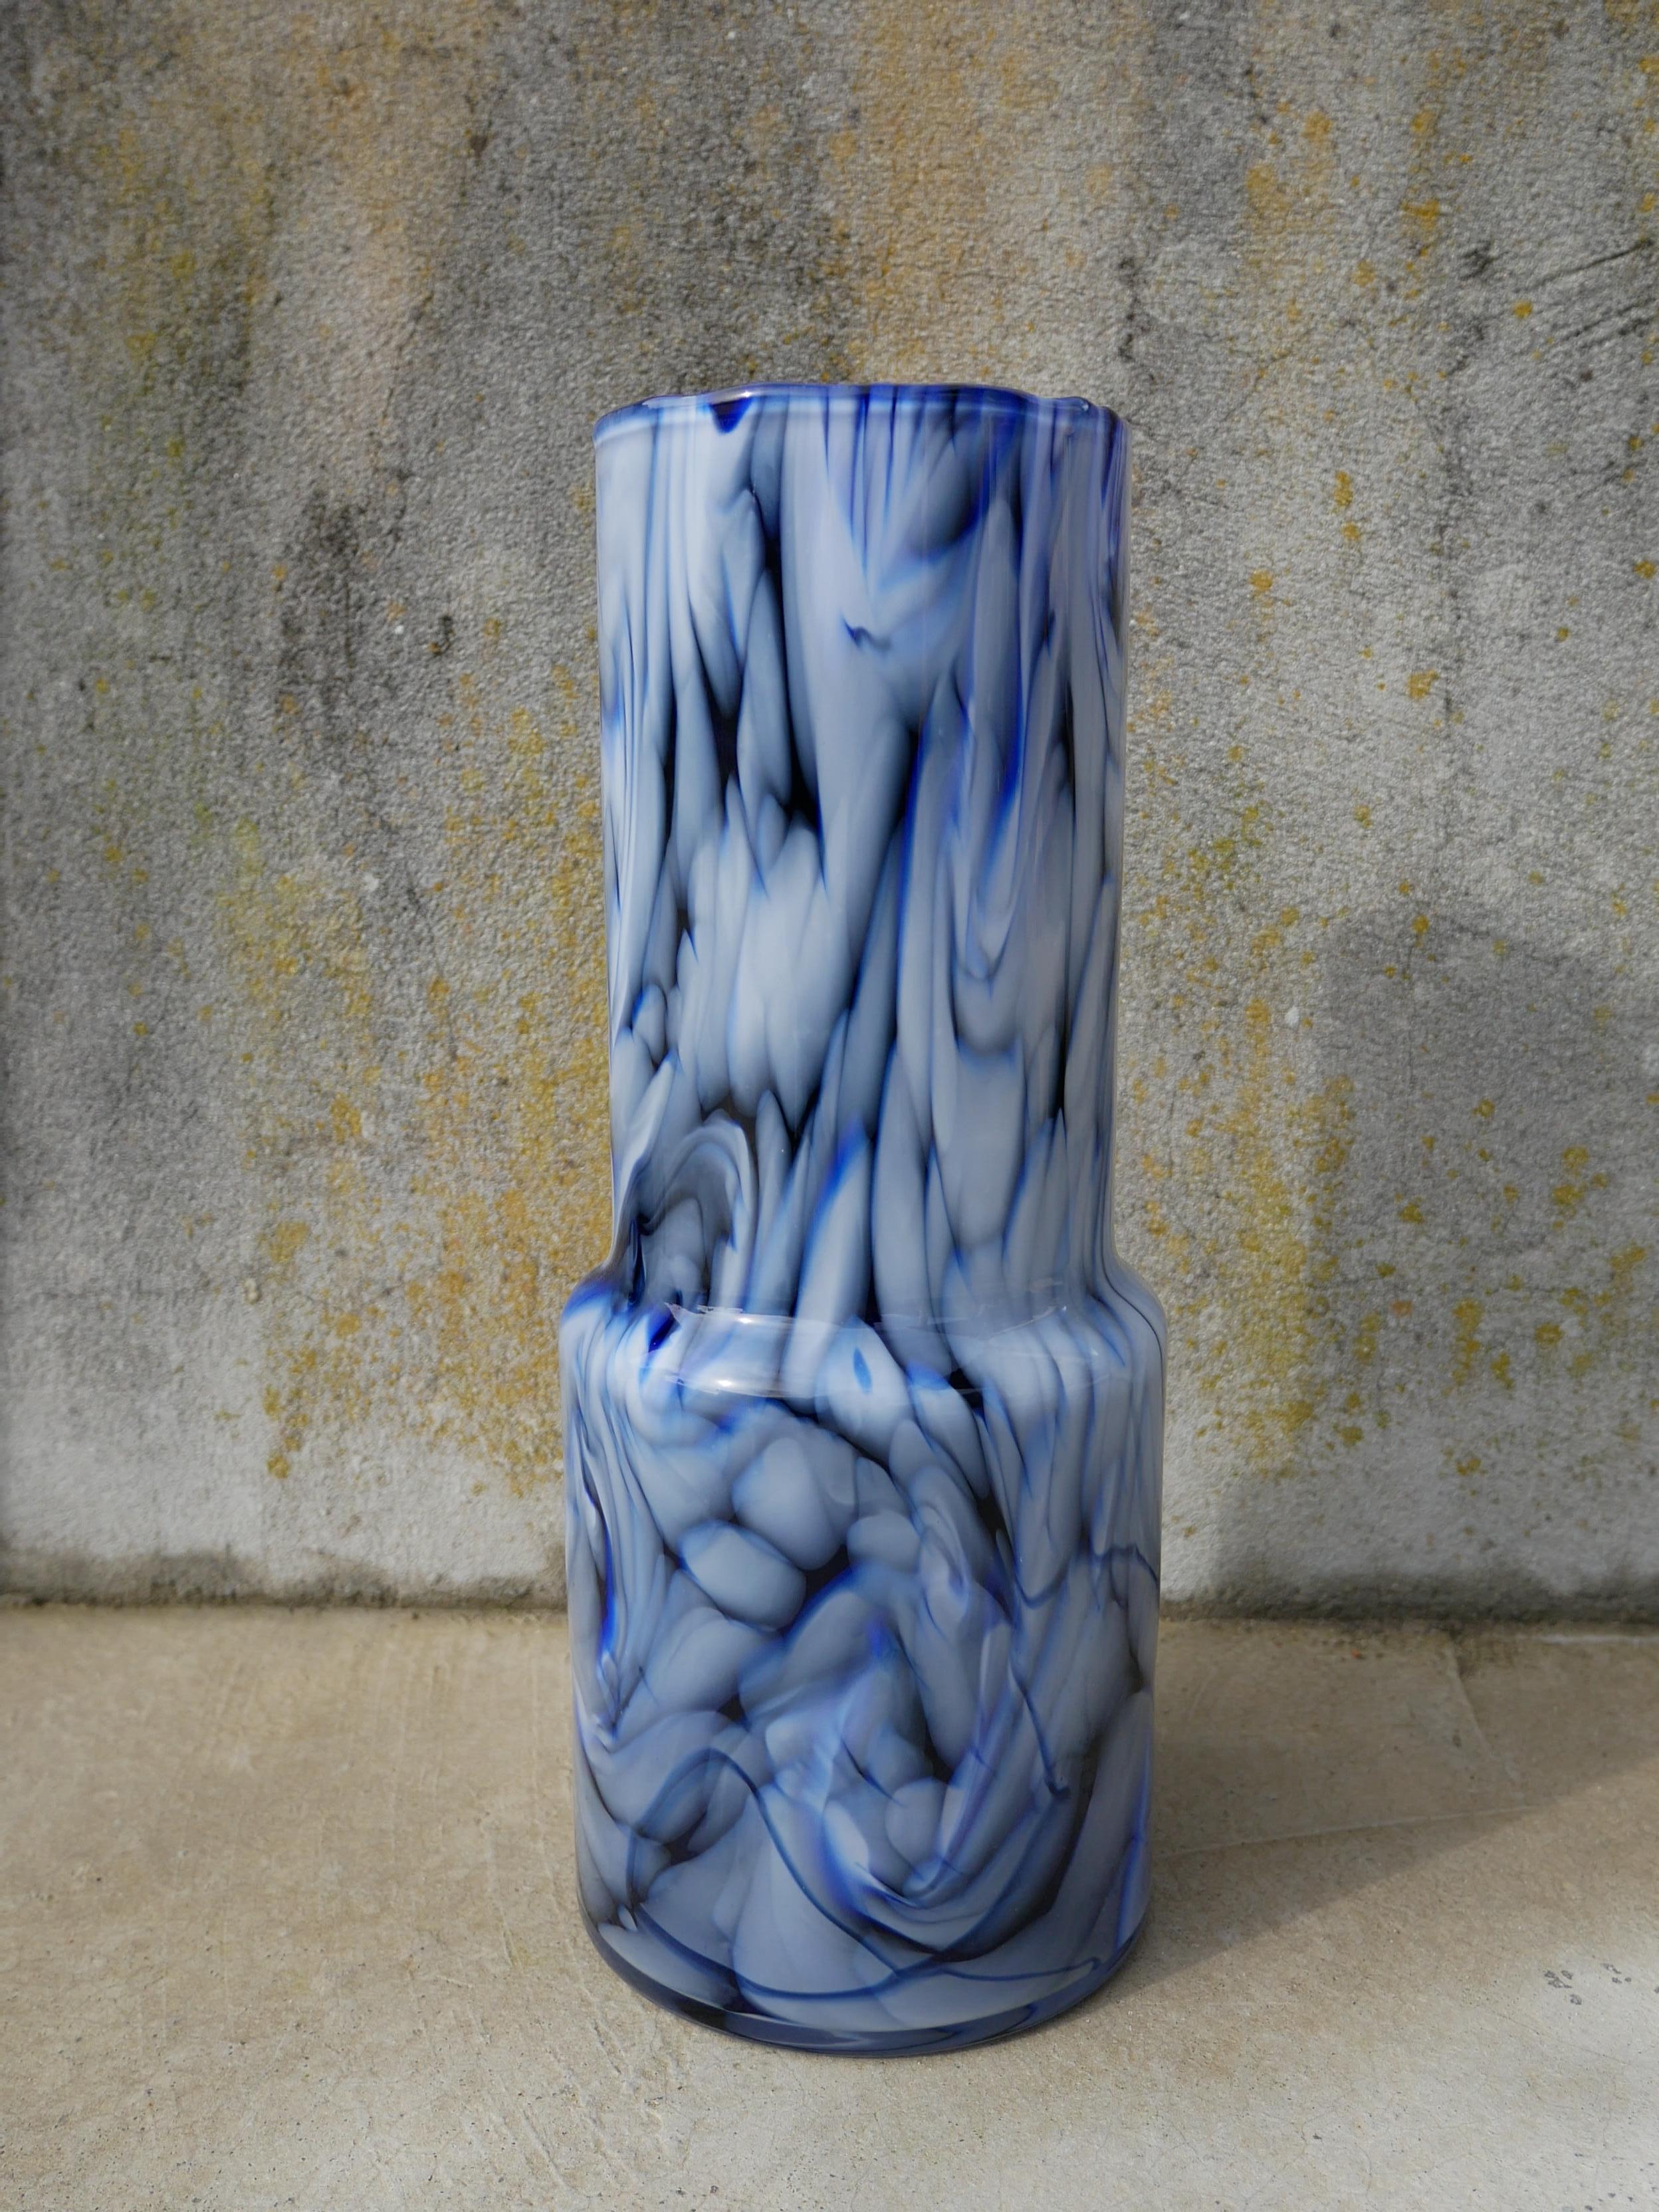 Im Mai 2016 startet Marie-Victoire Winckler ihre Totem-Kollektion mit Vasen und Hängeleuchten. Sie beginnt ihre Forschungen in Tunesien, wo sie sehr strukturiertes geblasenes Glas und traditionelle Keramik findet, aber es ist in Portugal, dass sie